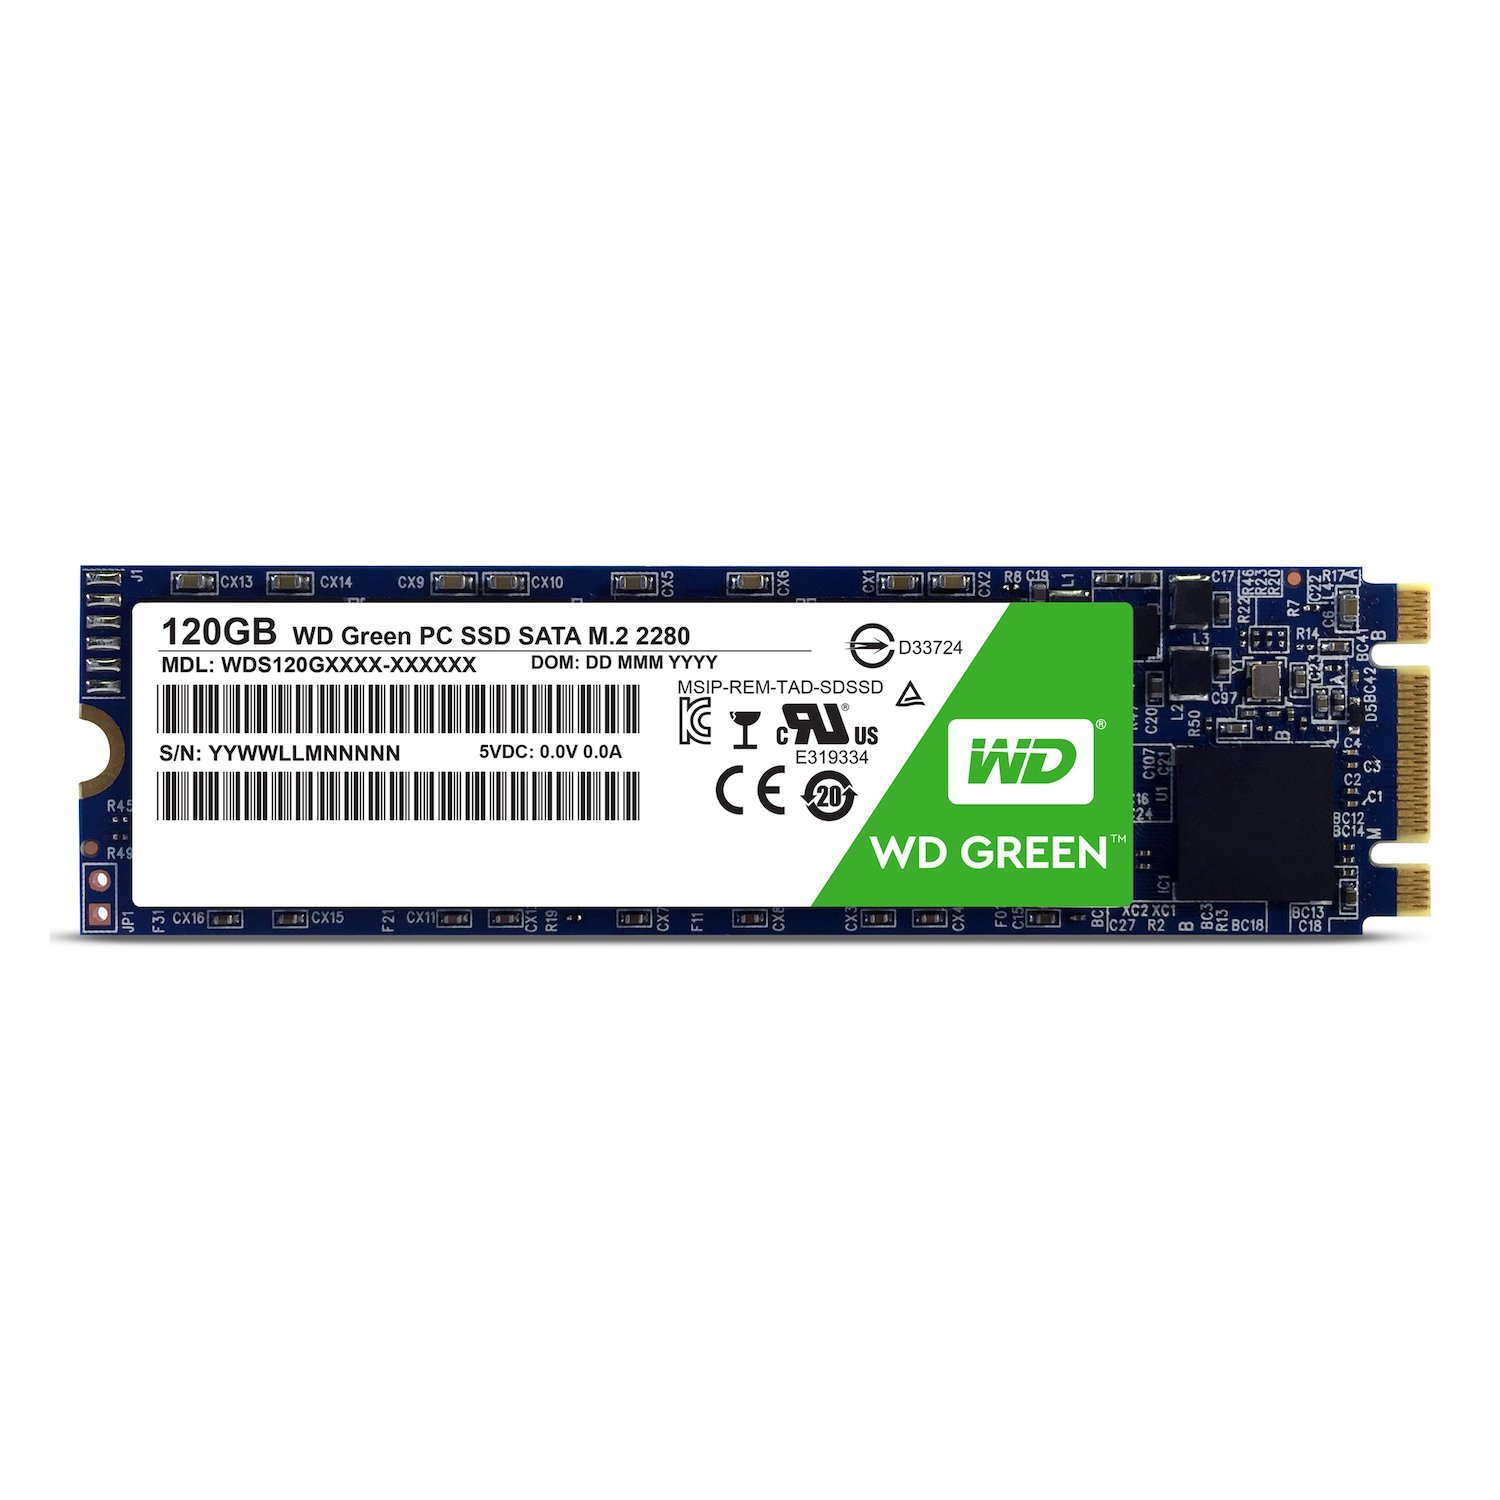 هارد پر سرعت-SSD  وسترن ديجيتال-Western Digital WD Green PC SSD-120GB- M.2 2280-SATA III 6Gb s-WDS120G1G0B